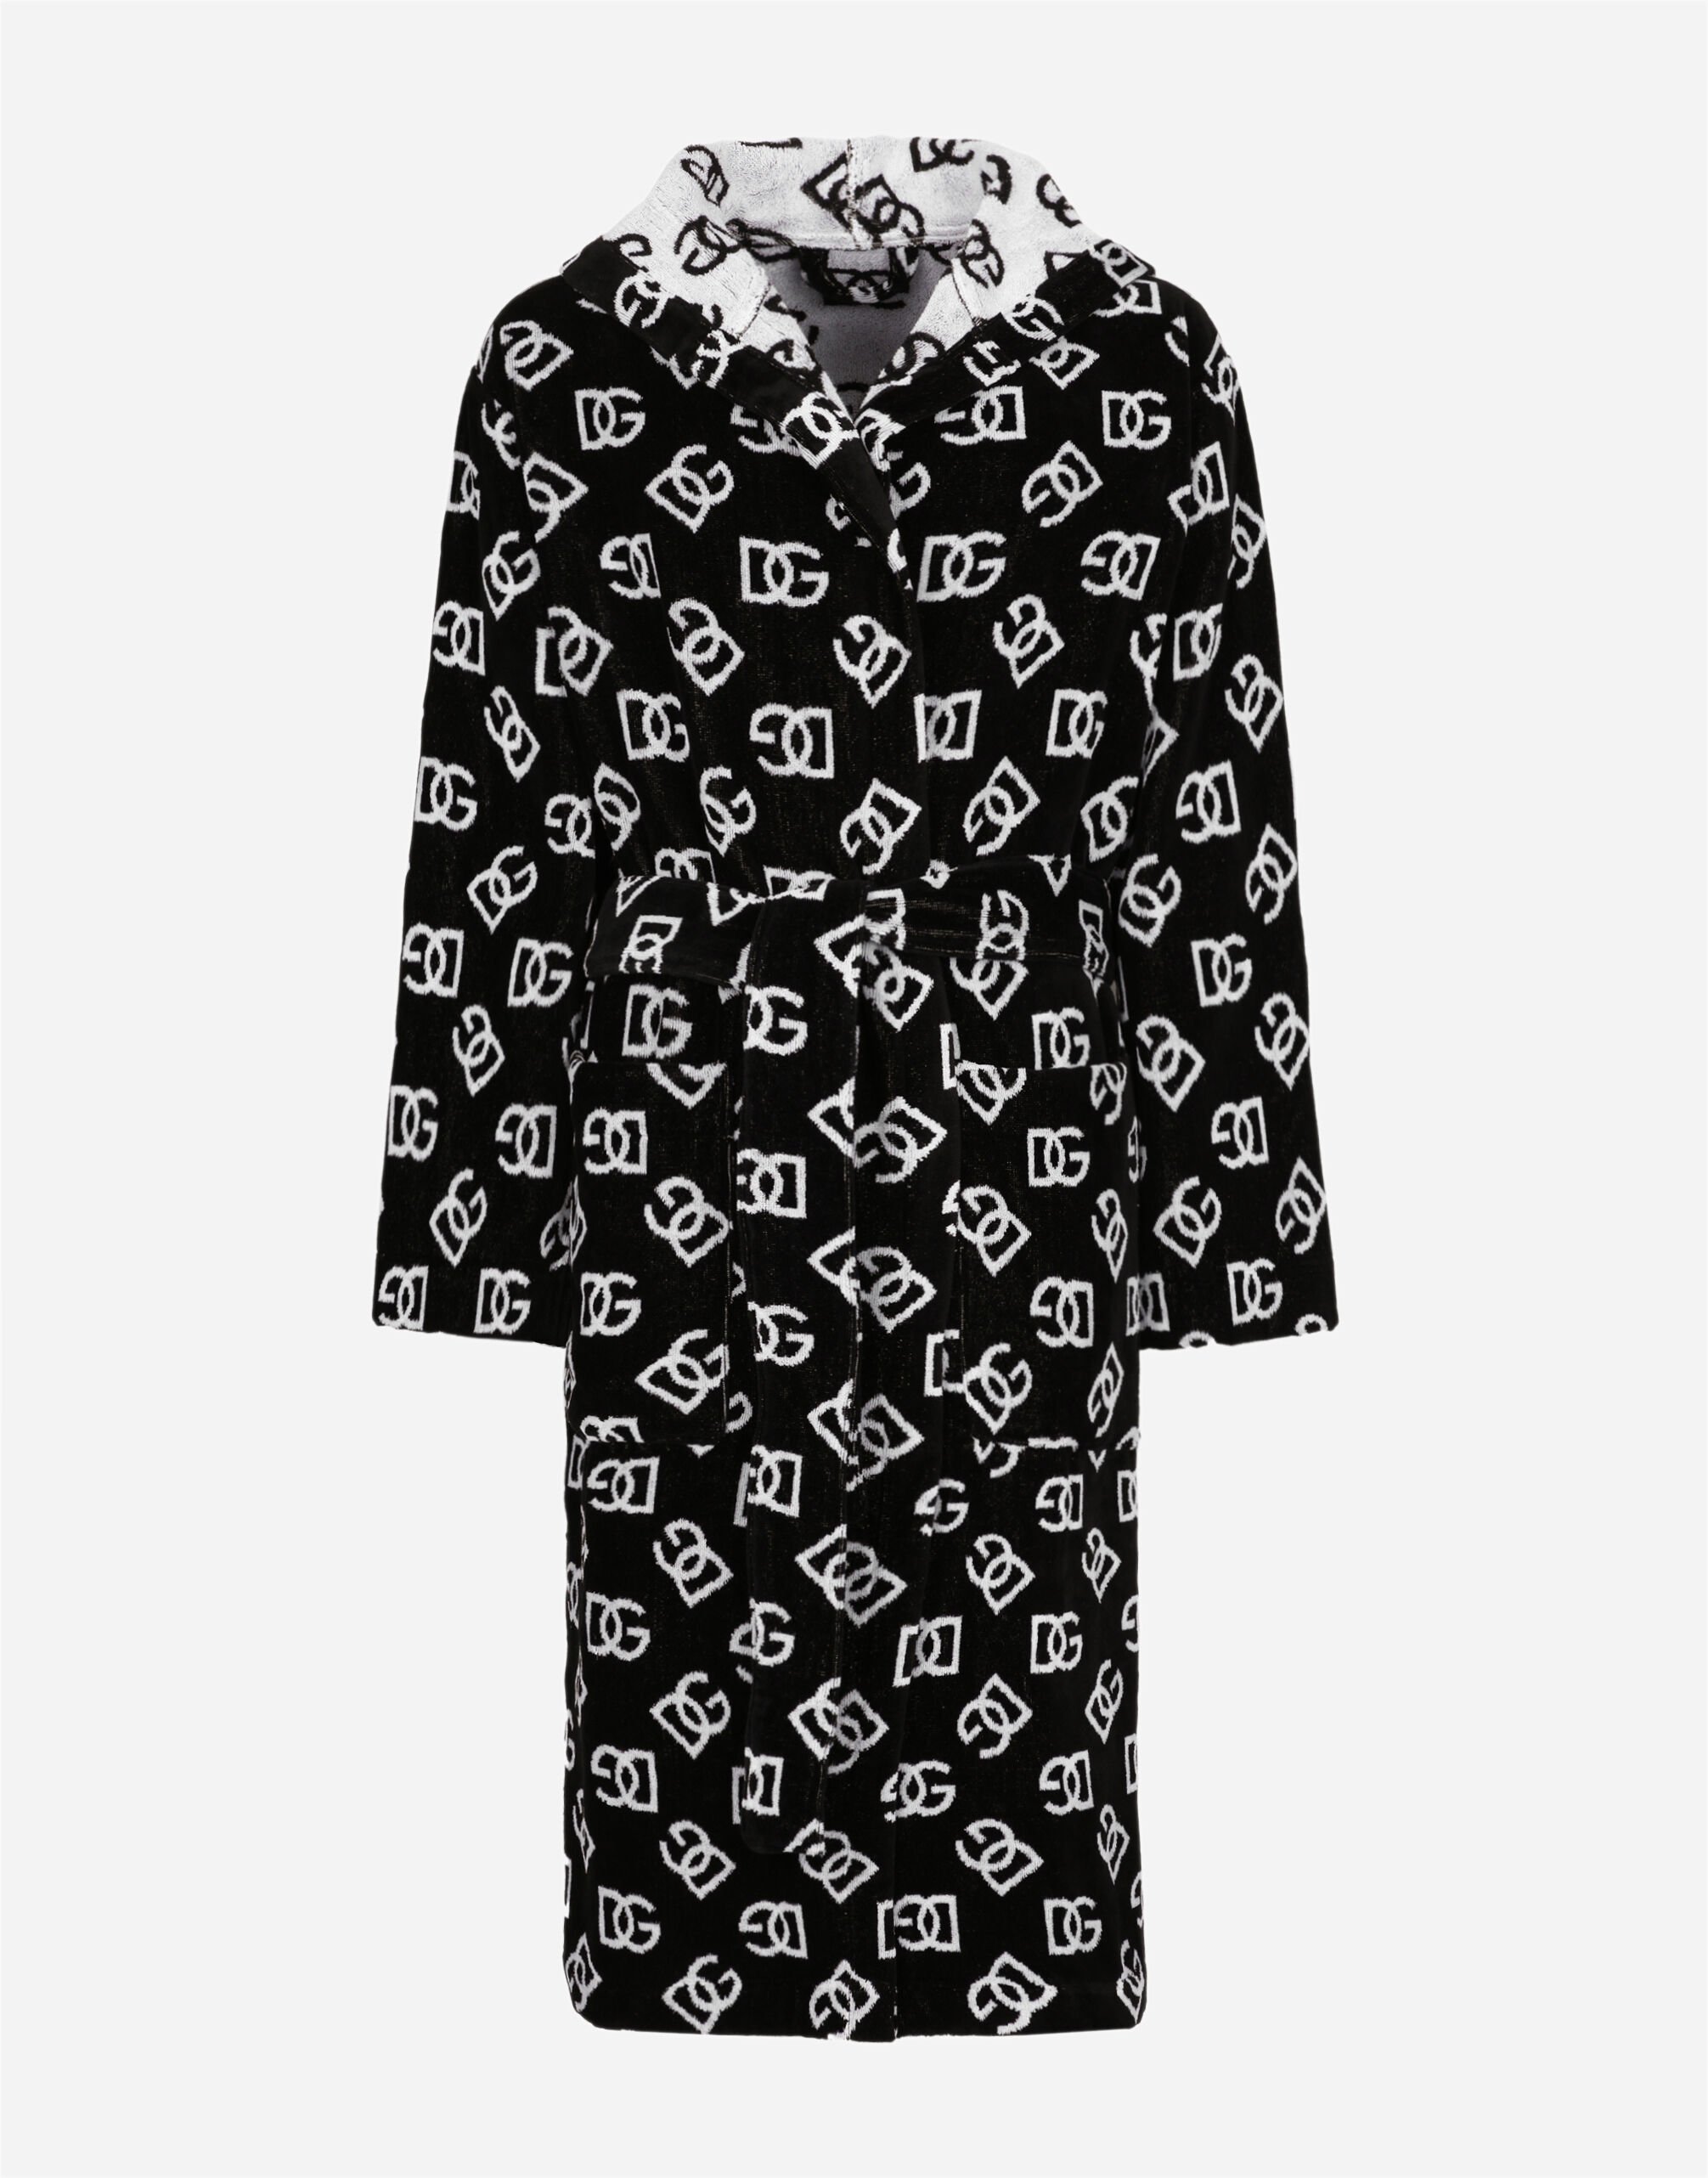 Dolce & Gabbana Bath Robe in Cotton Terry Jacquard Multicolor TC0108TCAK2